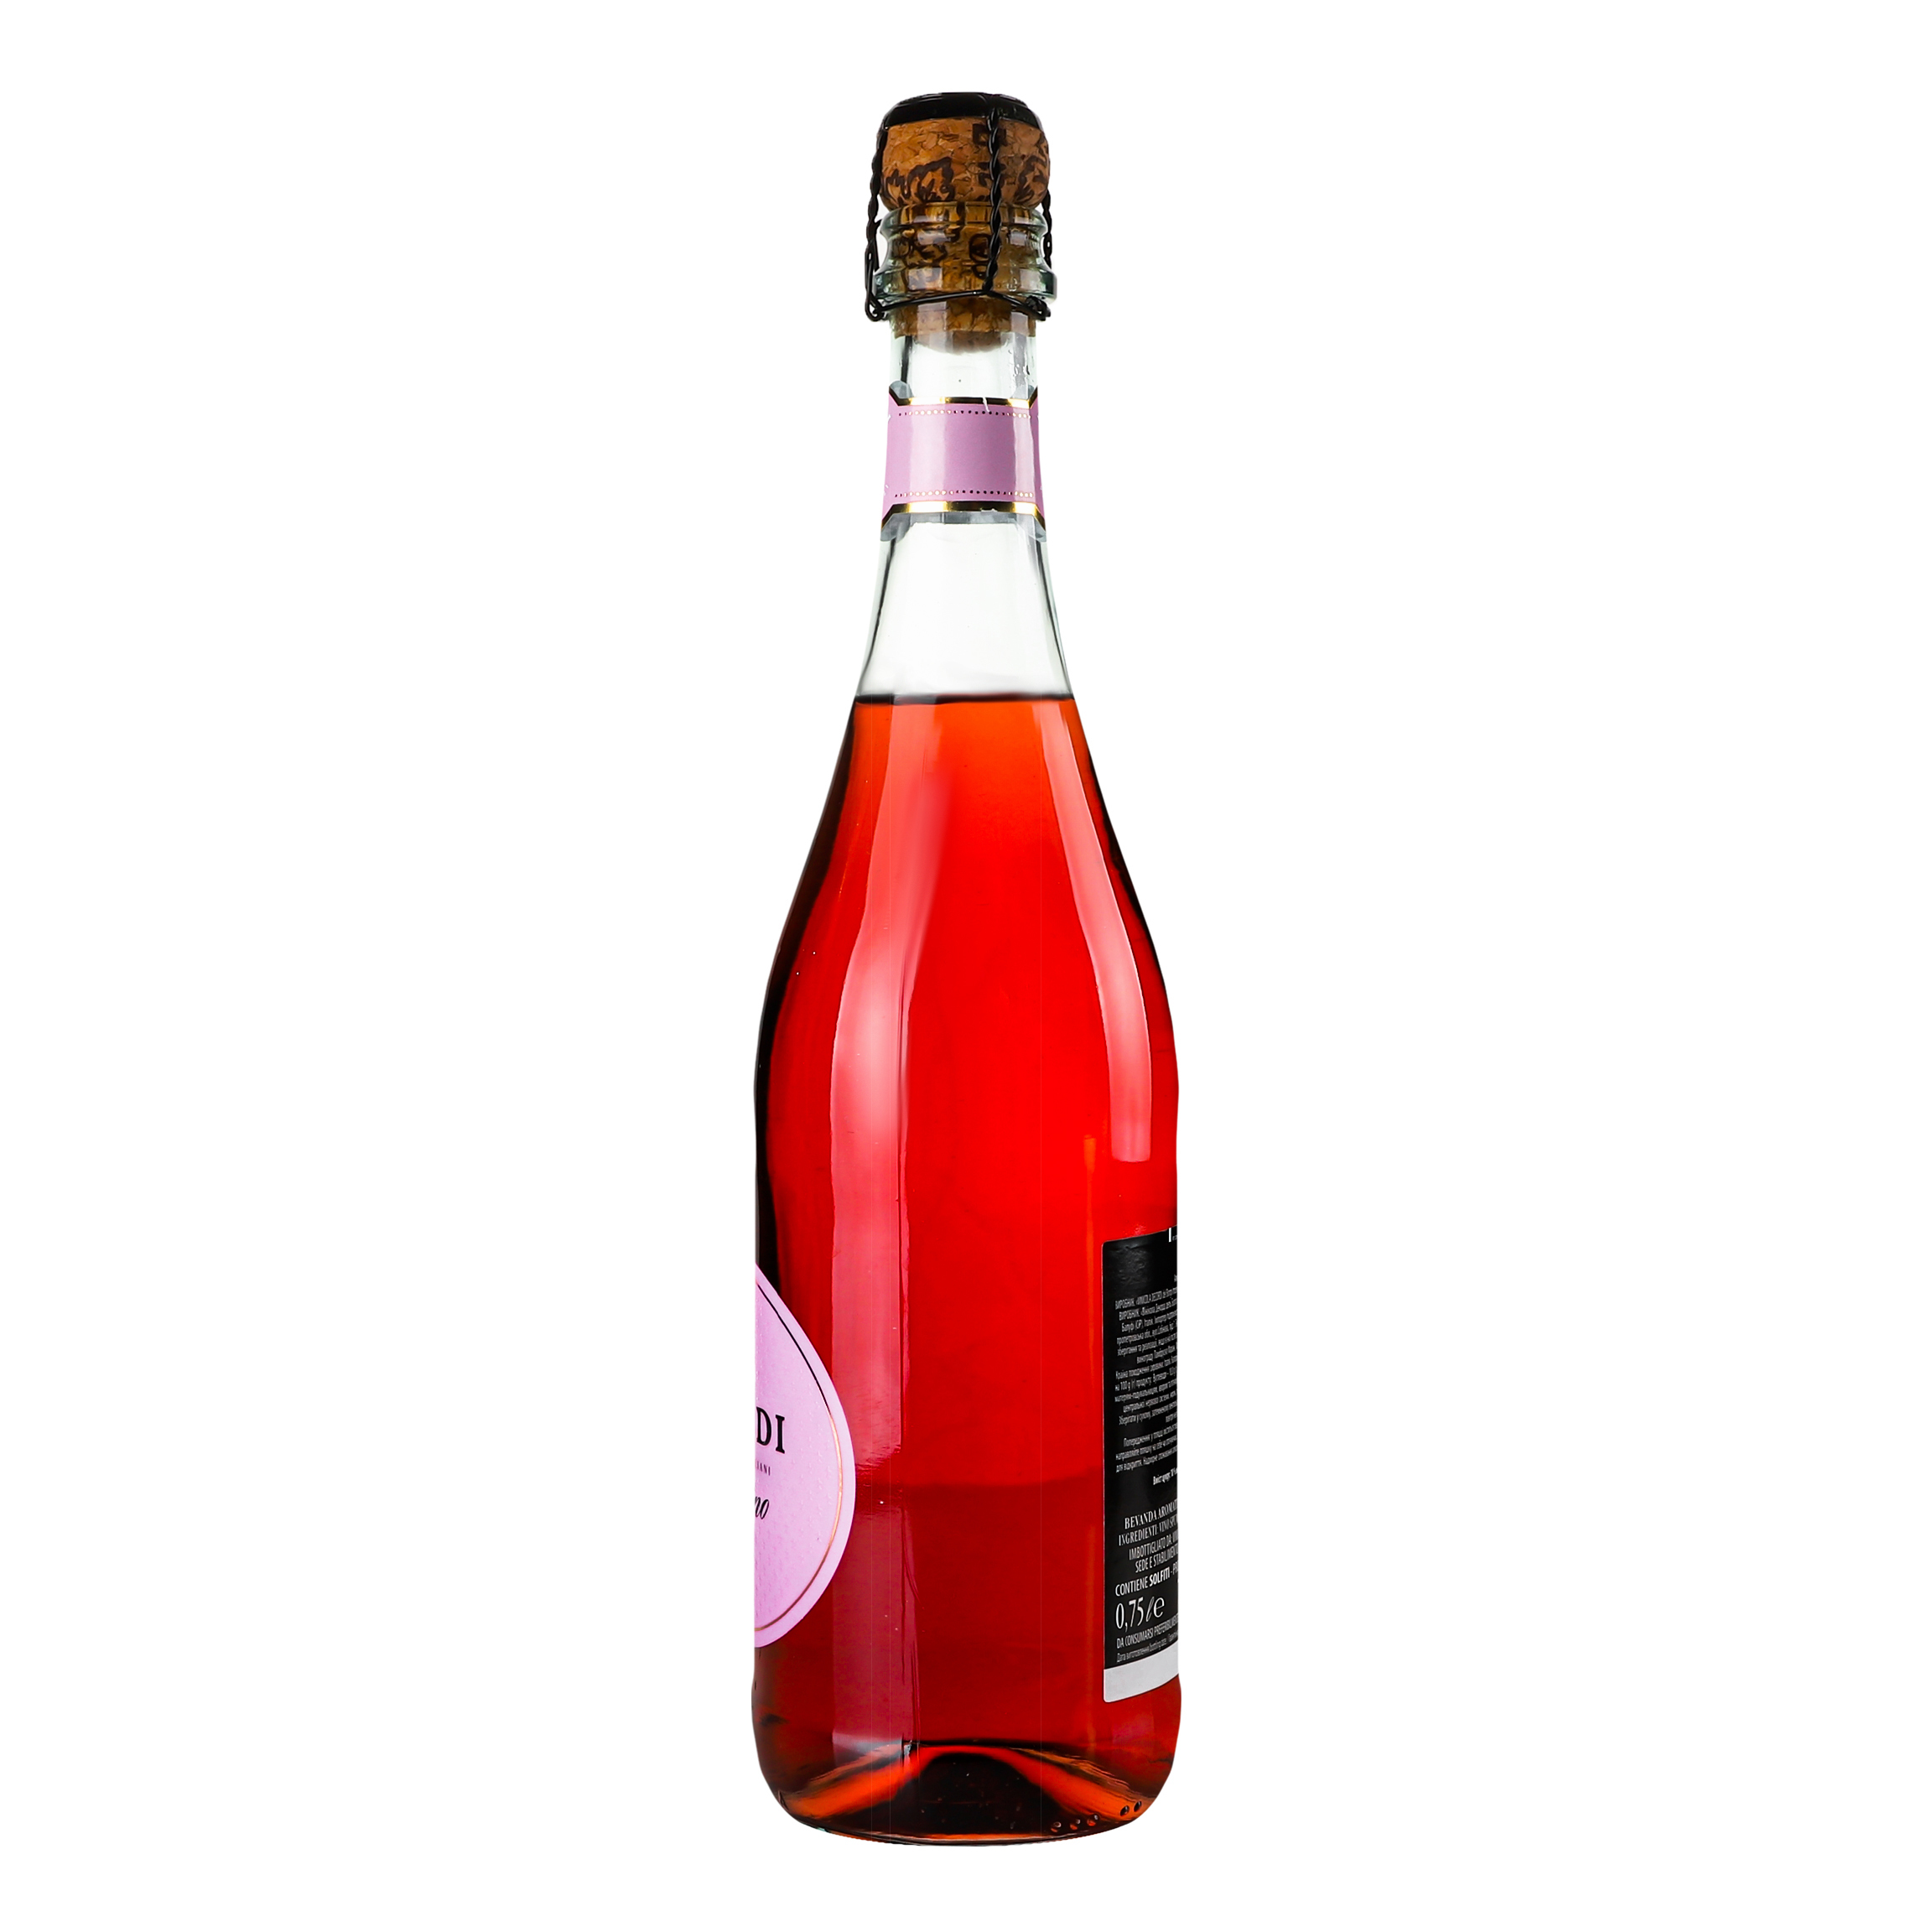 Ароматизированный напиток на основе вина Decordi Fragolino Rosato, розовый, полусладкий, 7,5%, 0,75 л - фото 3